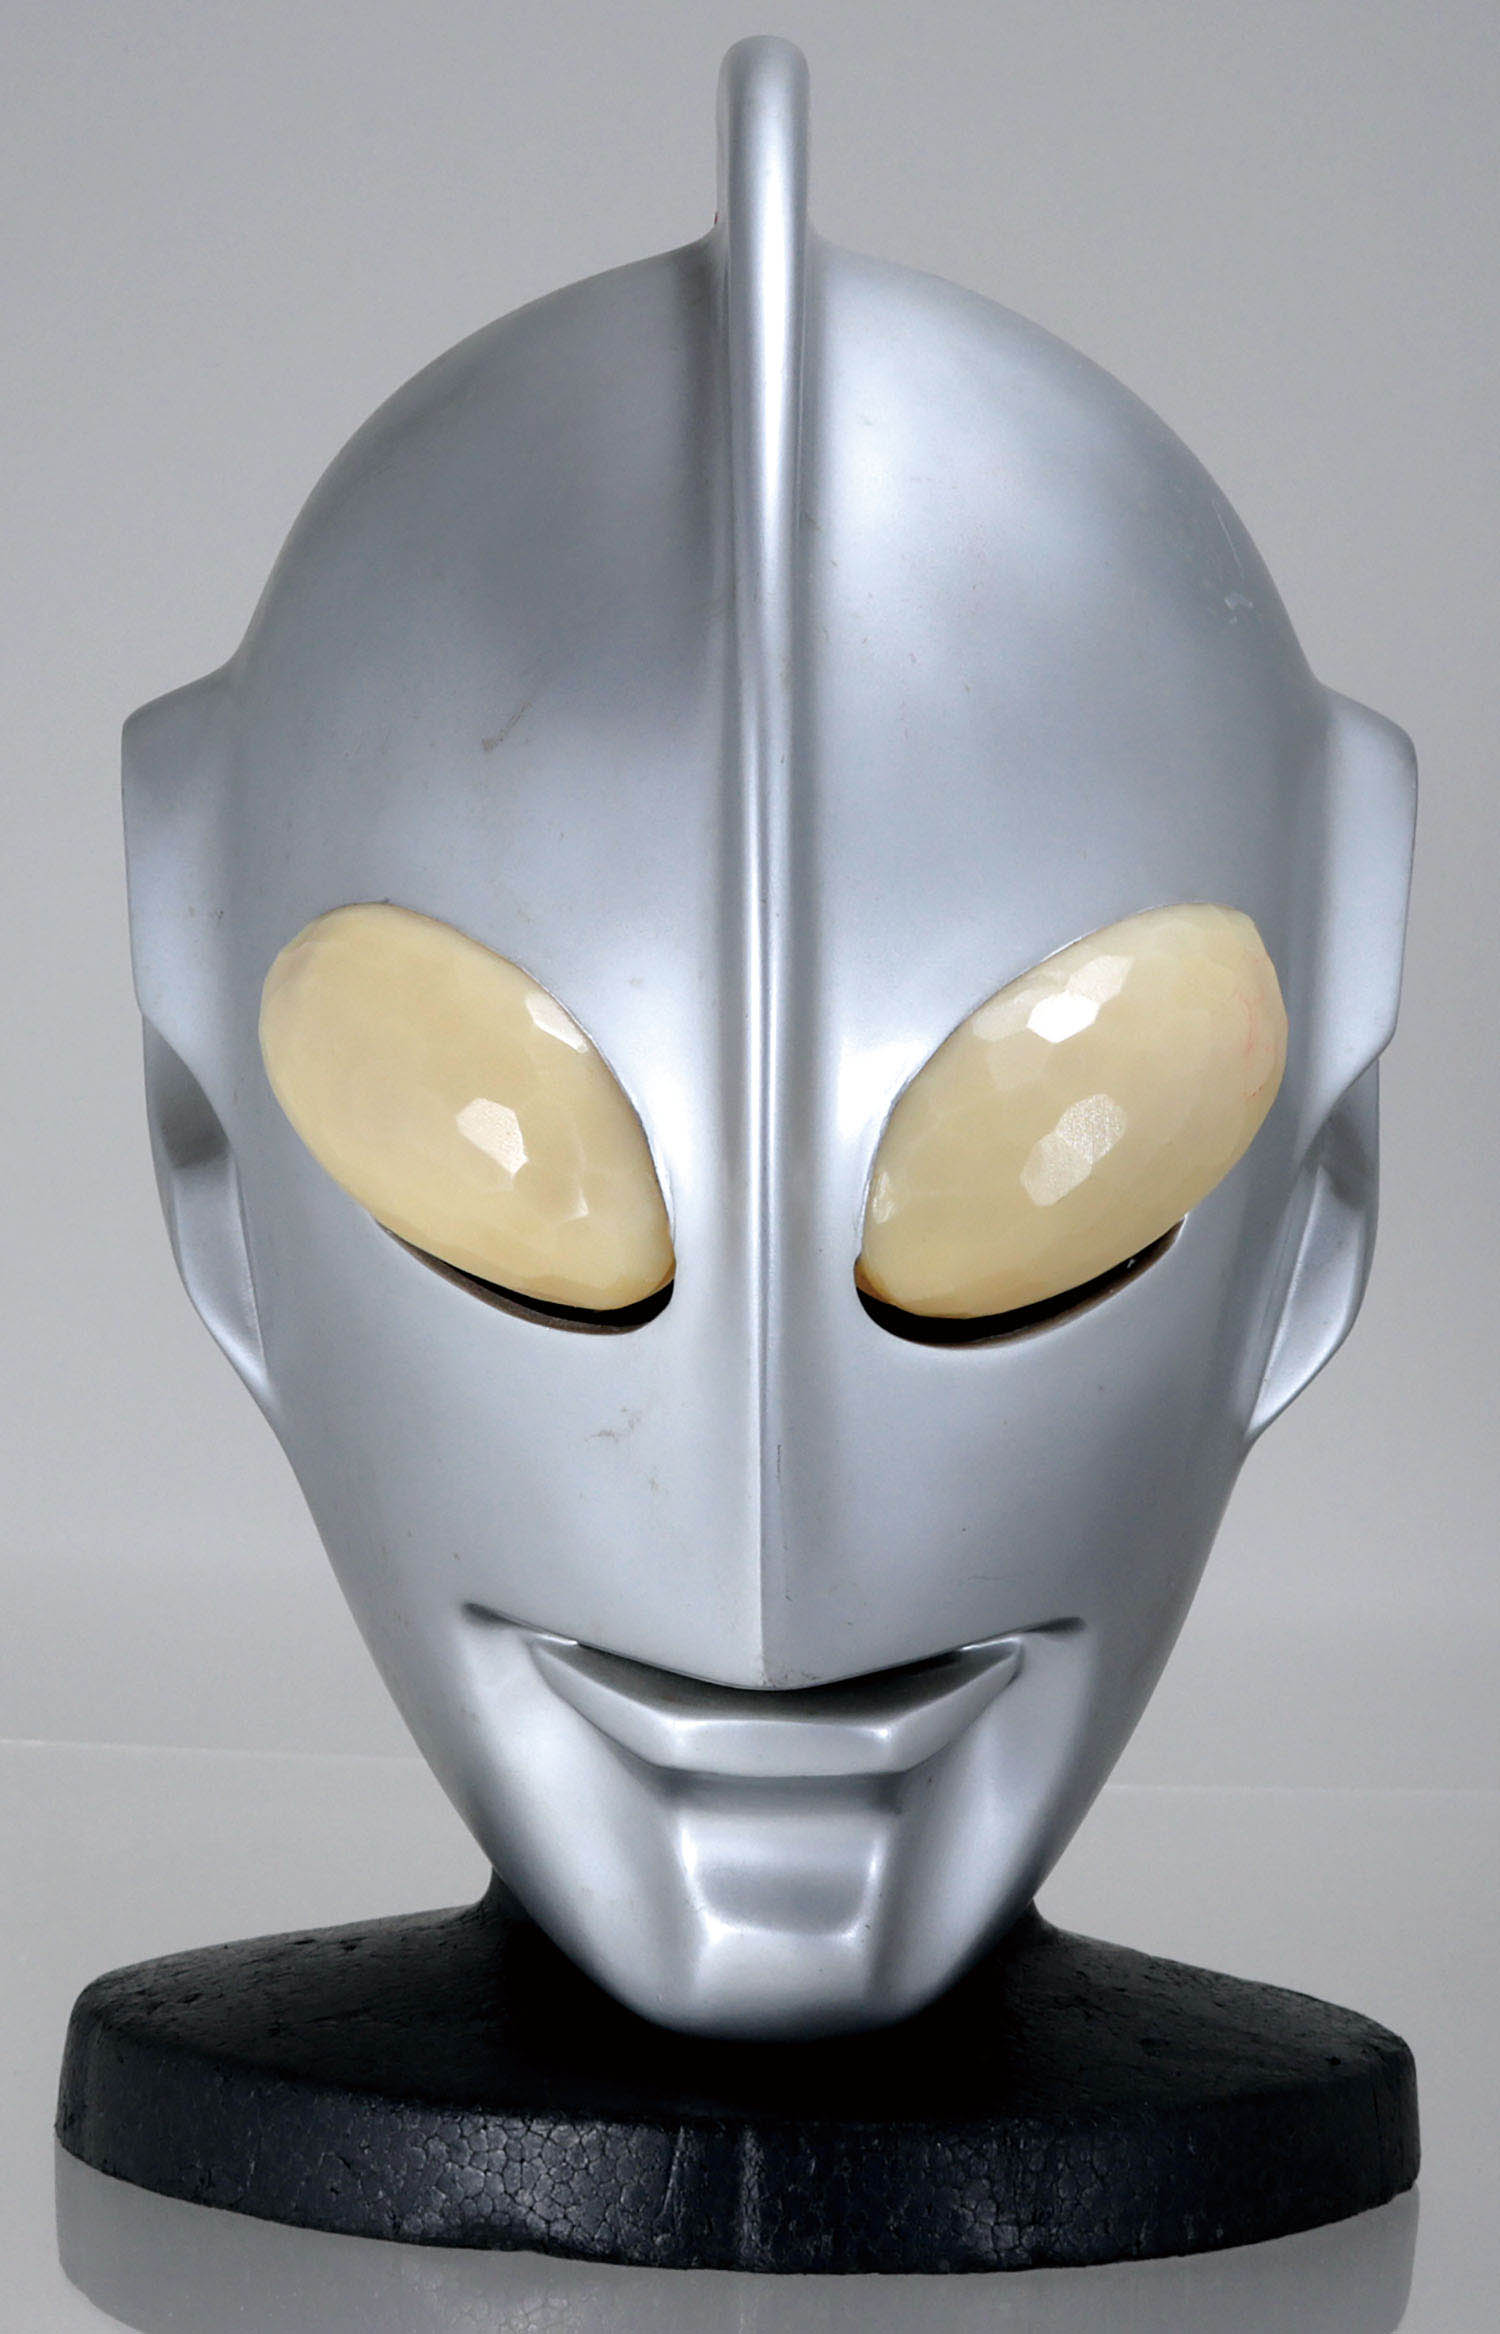 23,800円ウルトラマングレートマスク